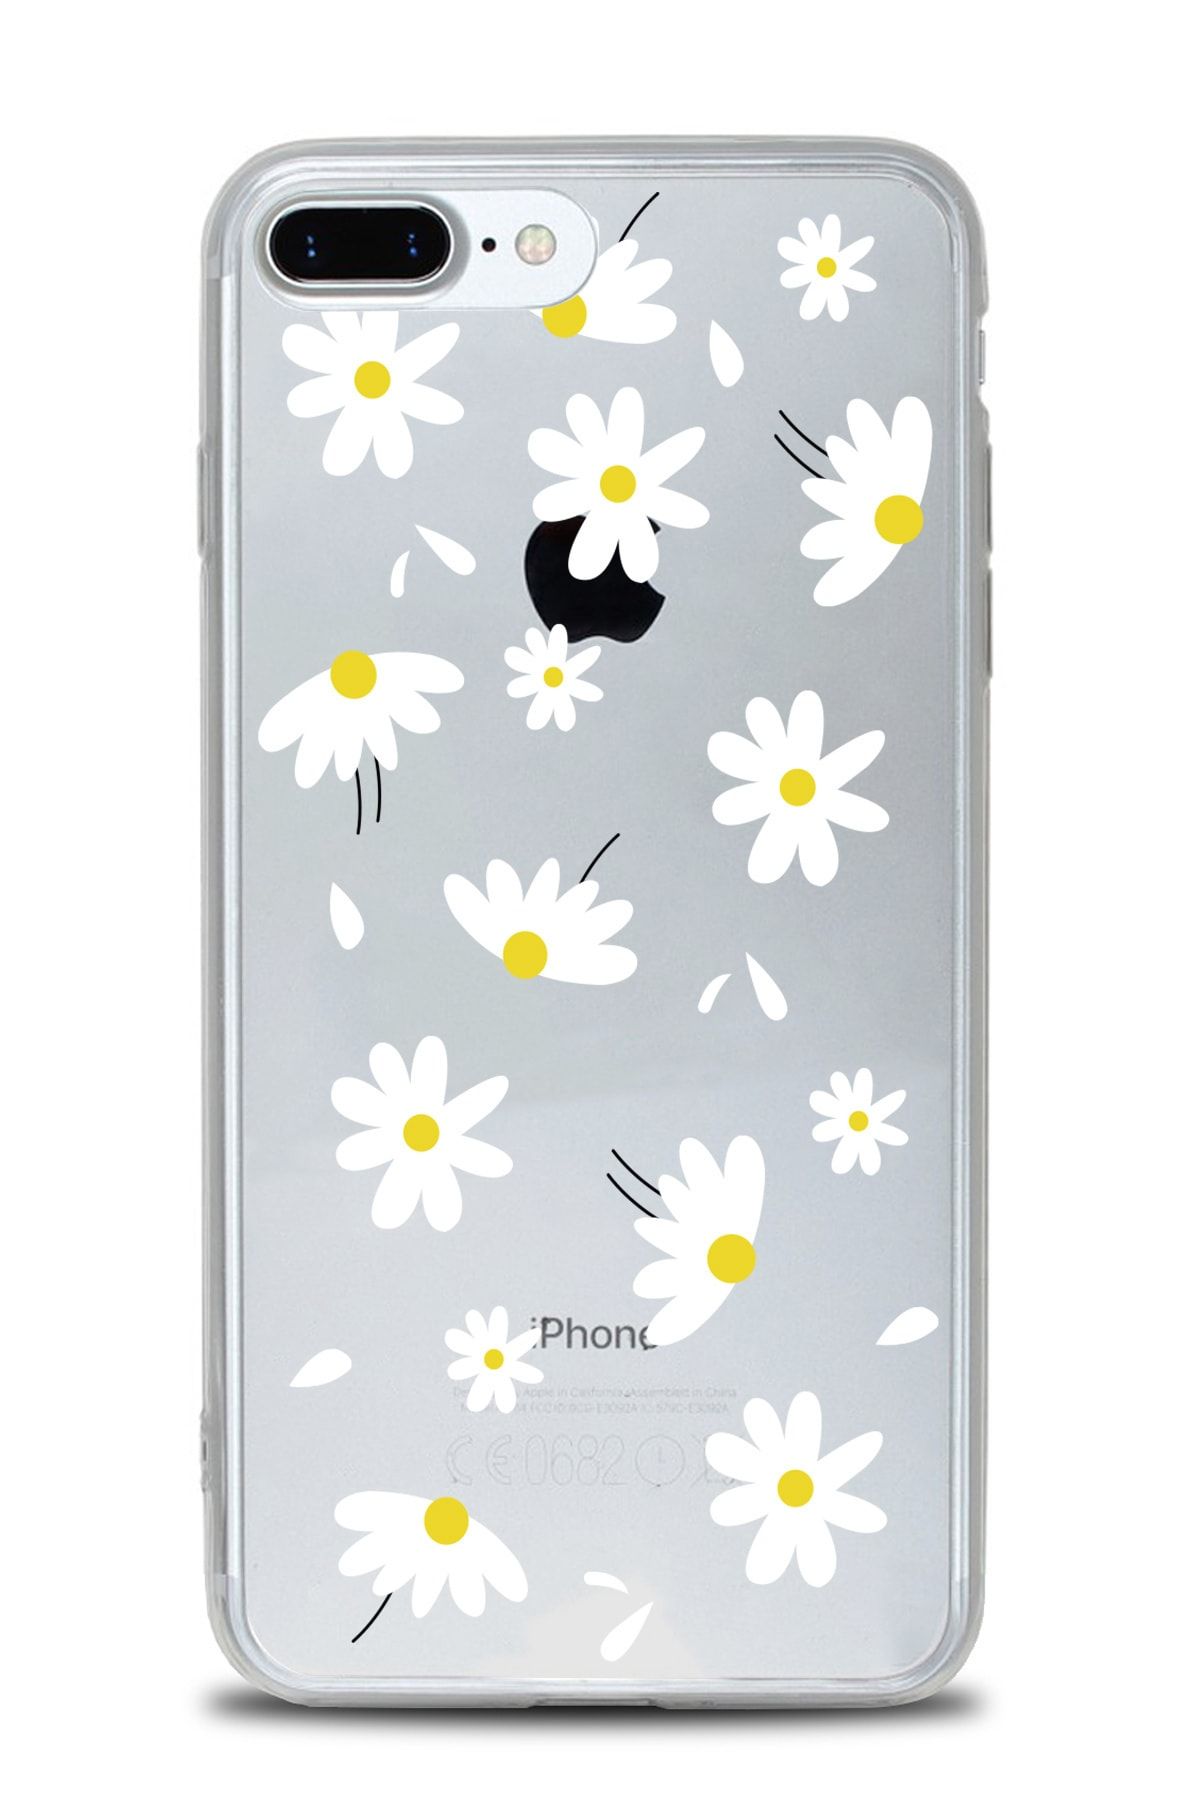 AksesuarLab Iphone 8 Plus Kılıf Desenli - Şeffaf Silikon Kılıf (ÇİÇEK TASARIM)